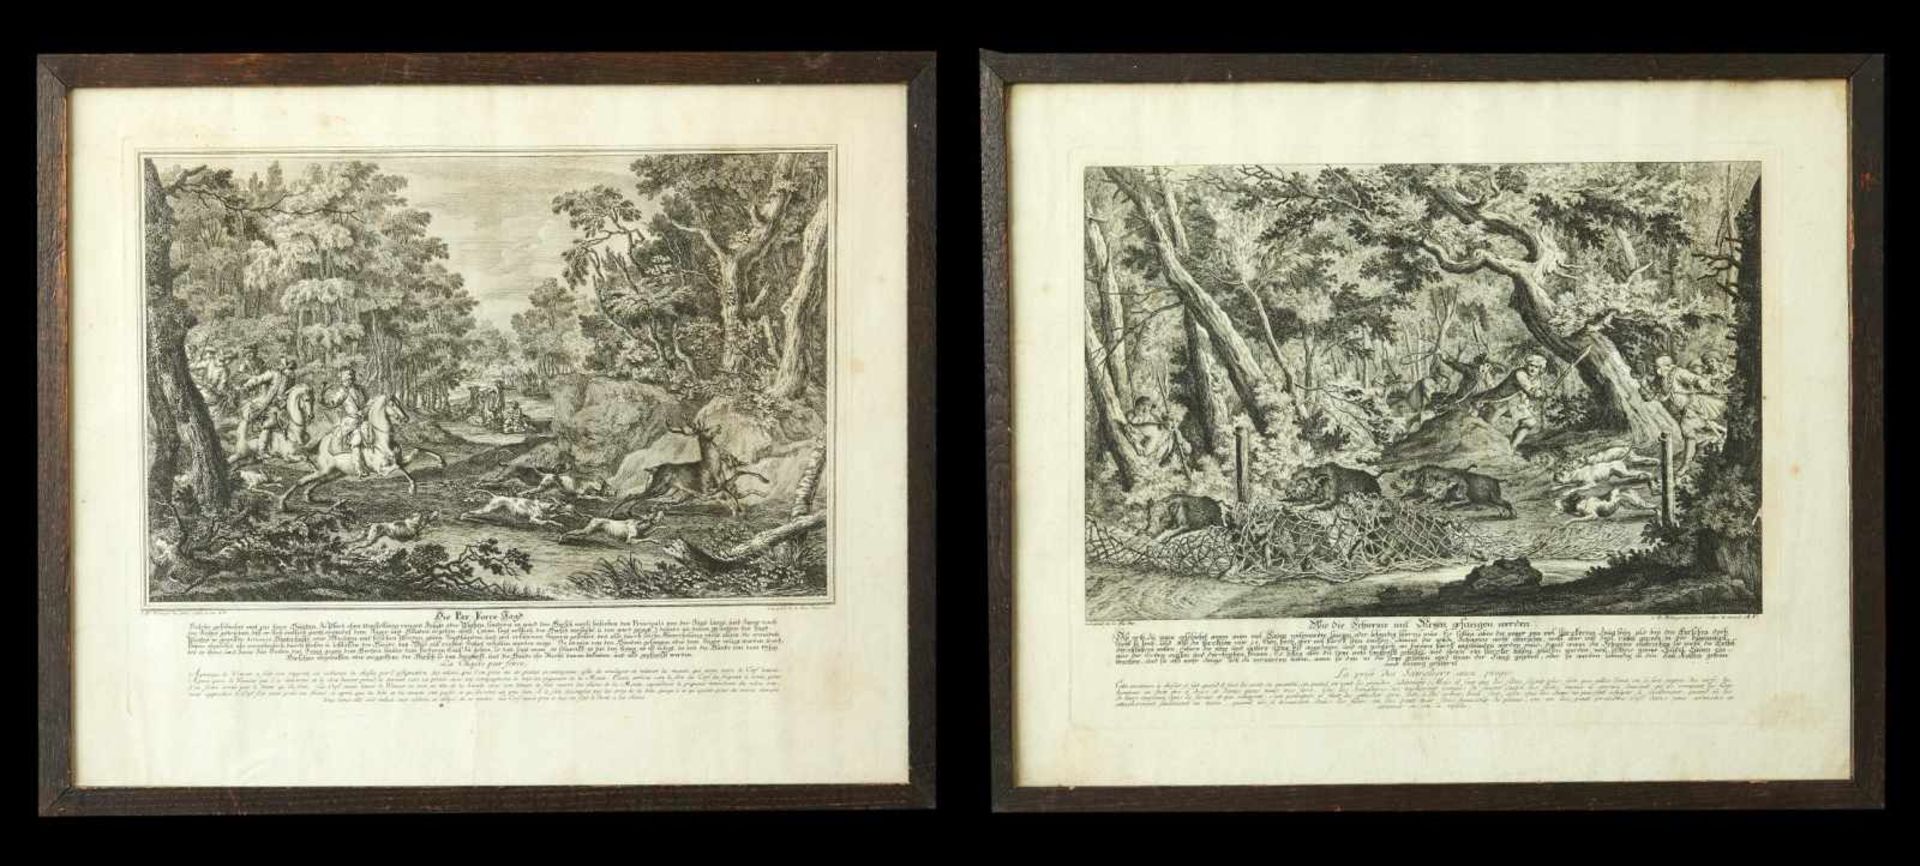 Perforce Jagd u. Wie die Schweine mit Netzen gefangen werdenJohann Elias Ridinger, (1698-1767)